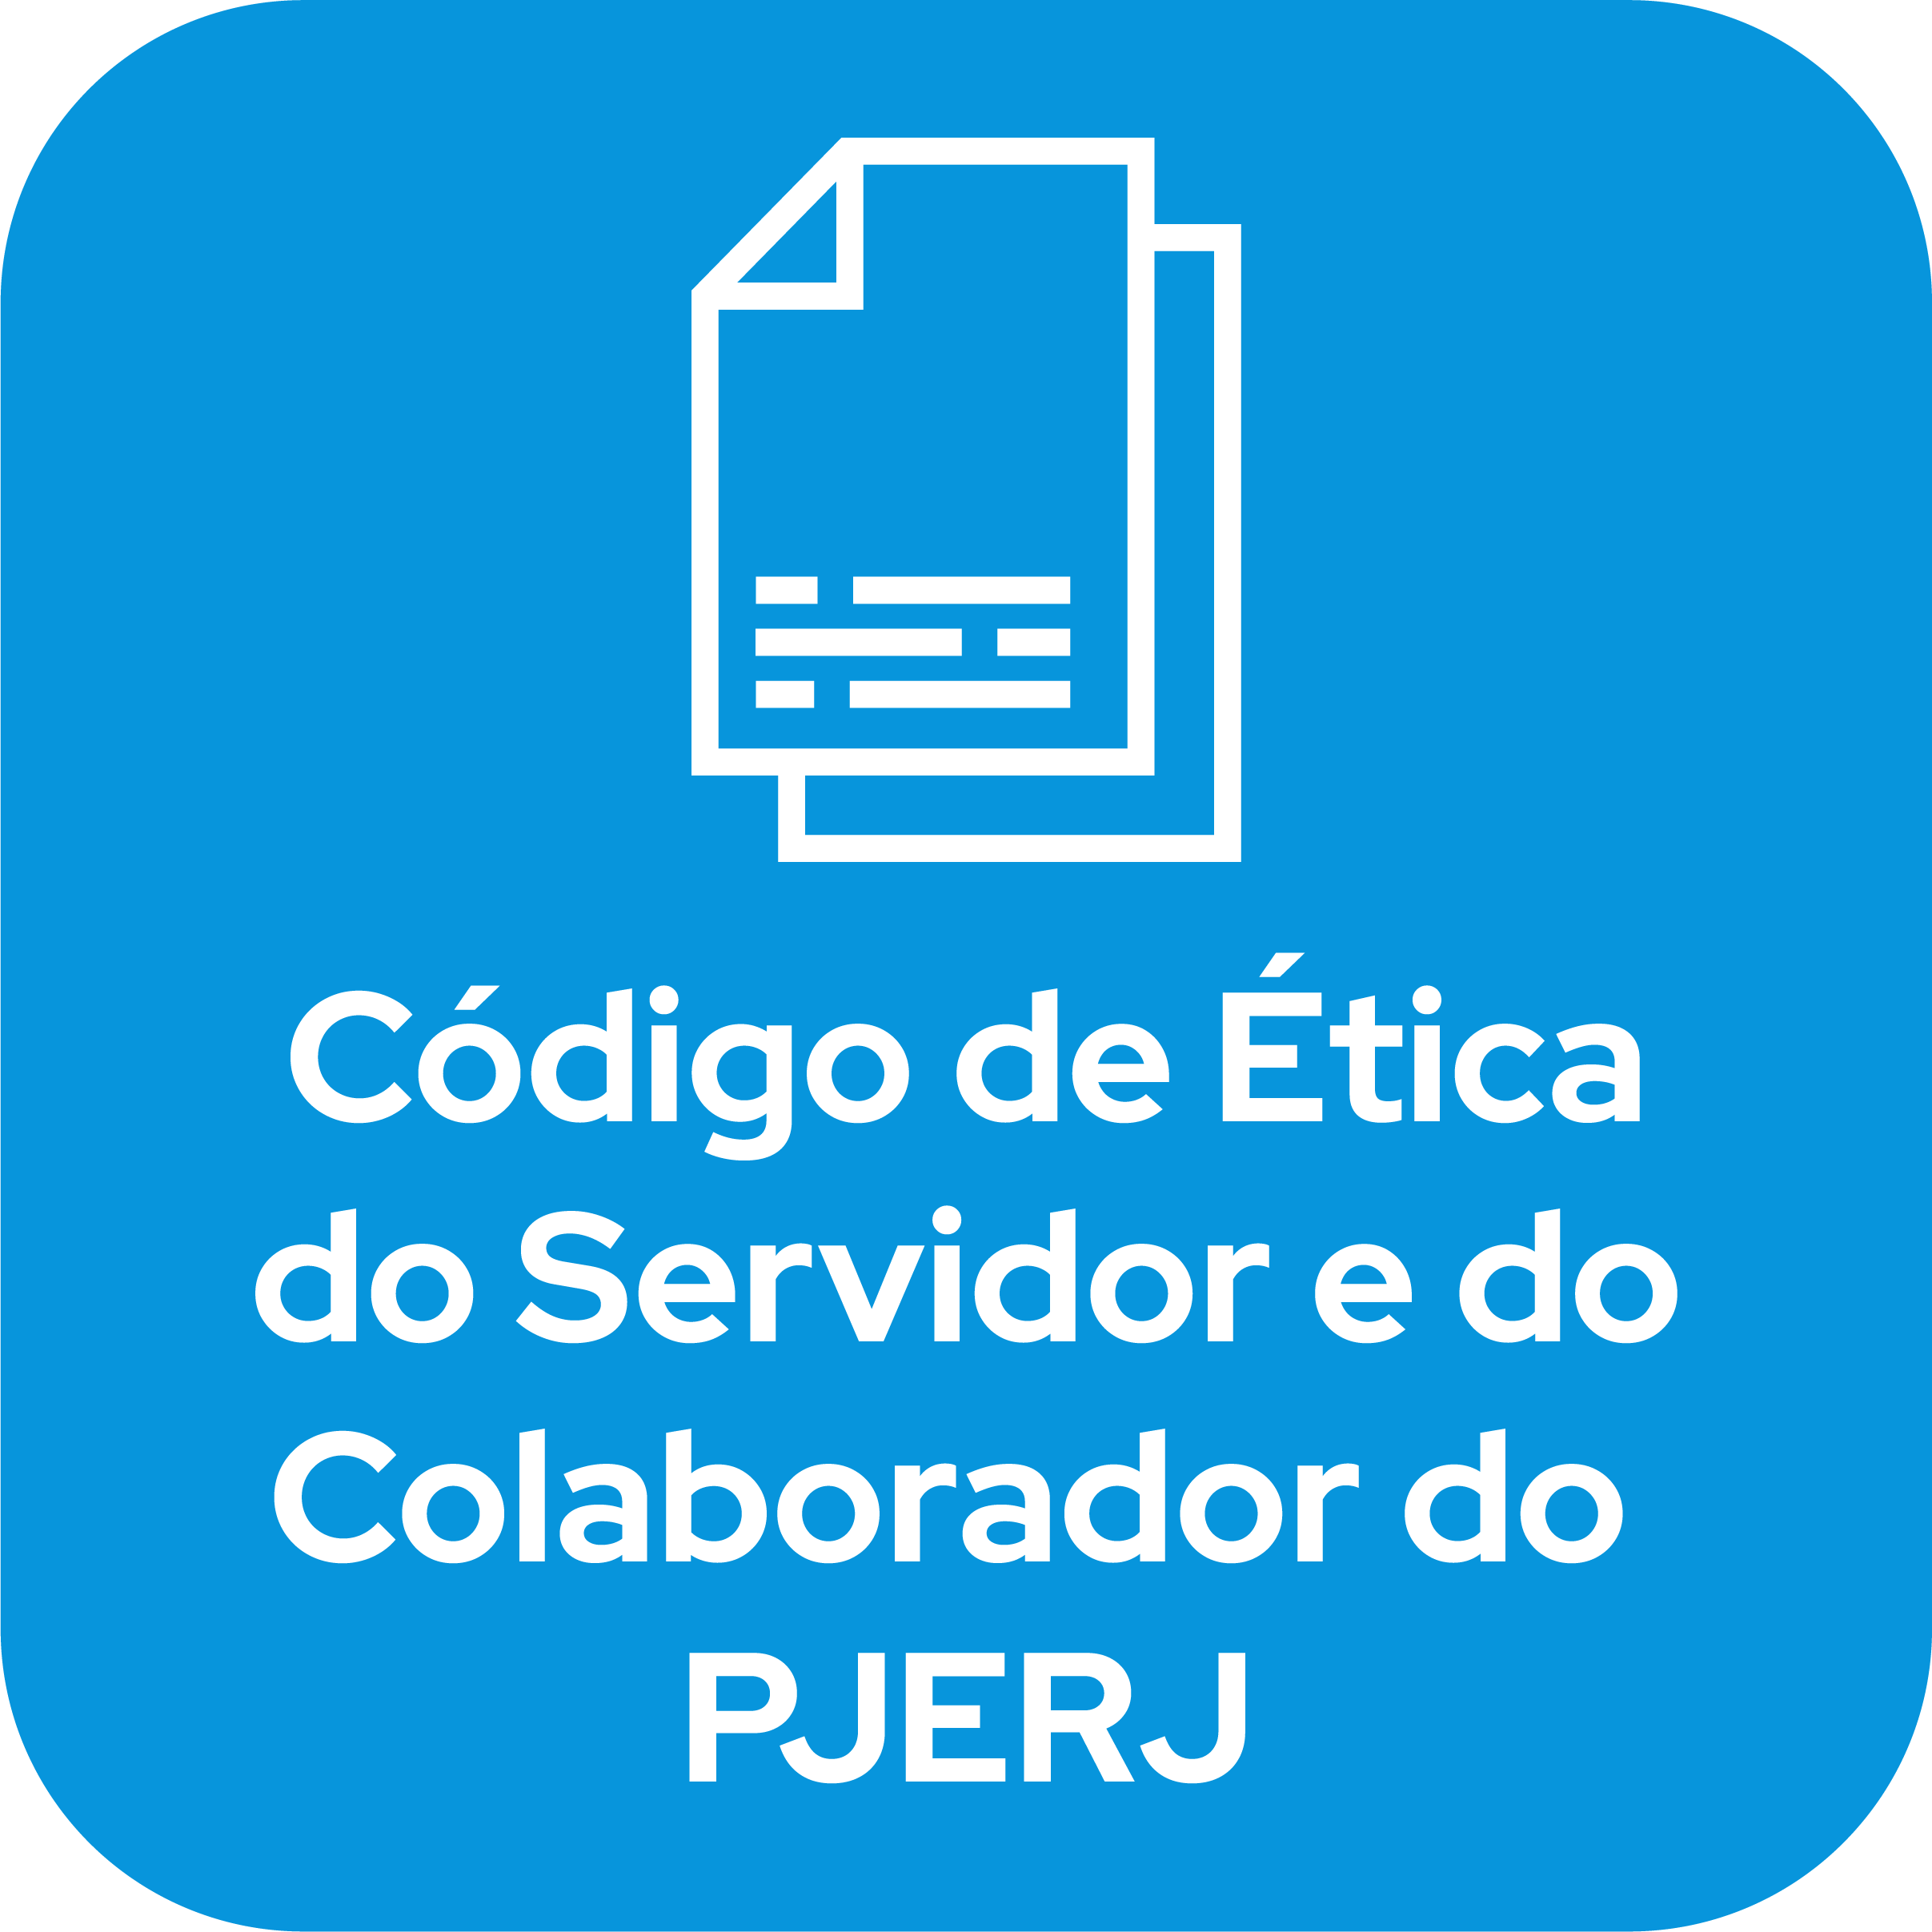 Clique e acesso sobre o código de ética do servidor e do colaborador do PJERJ